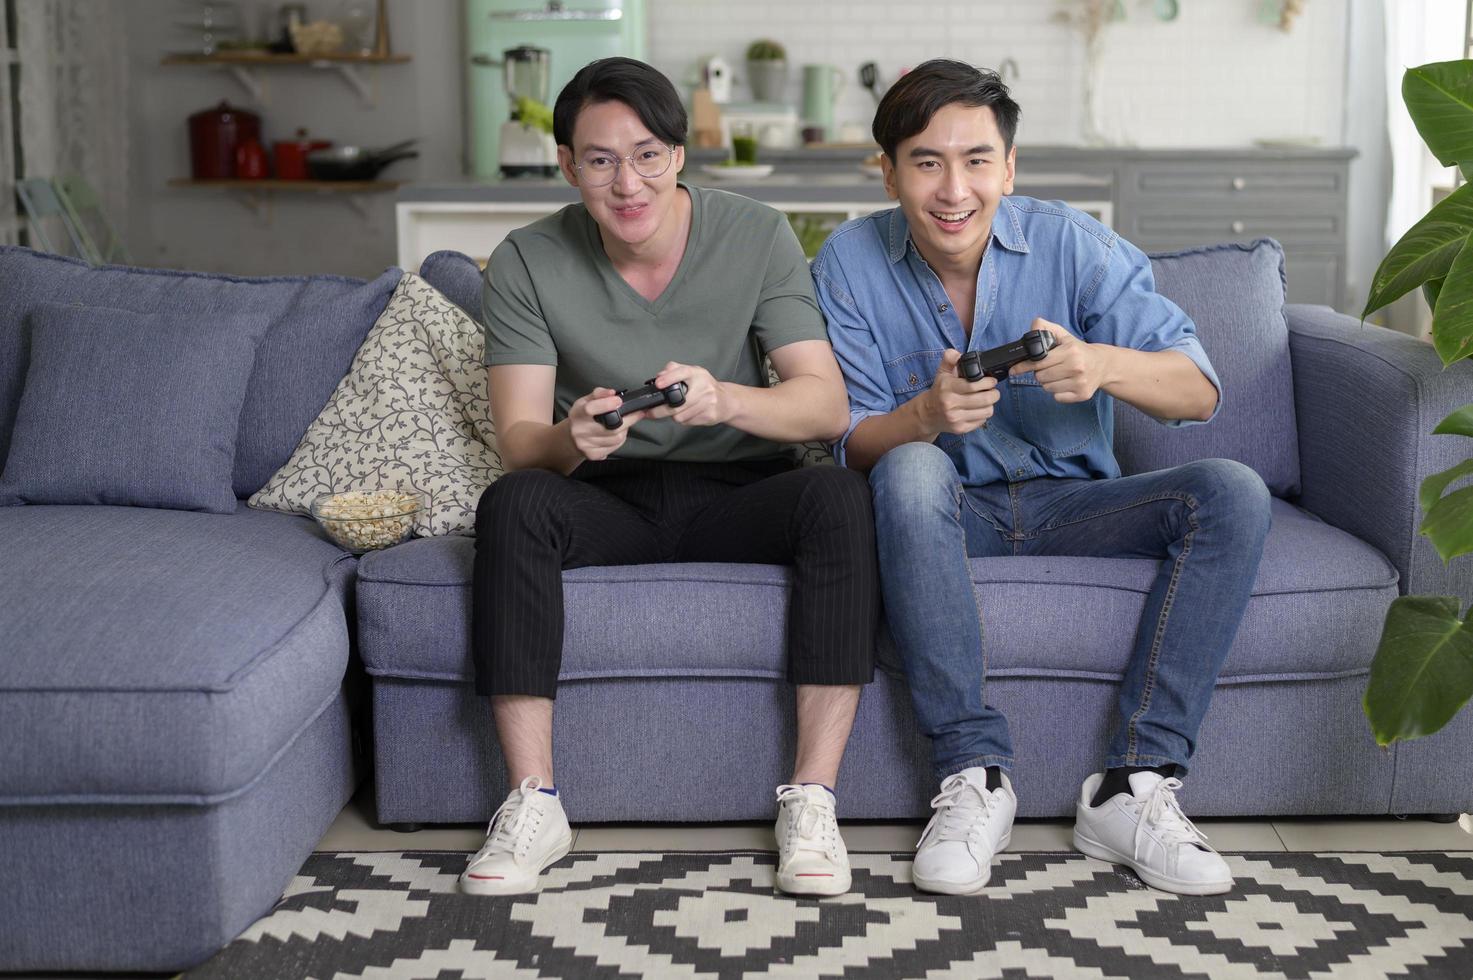 joven pareja gay sonriente jugando videojuegos en la sala de estar en casa, lgbtq y diversidad foto